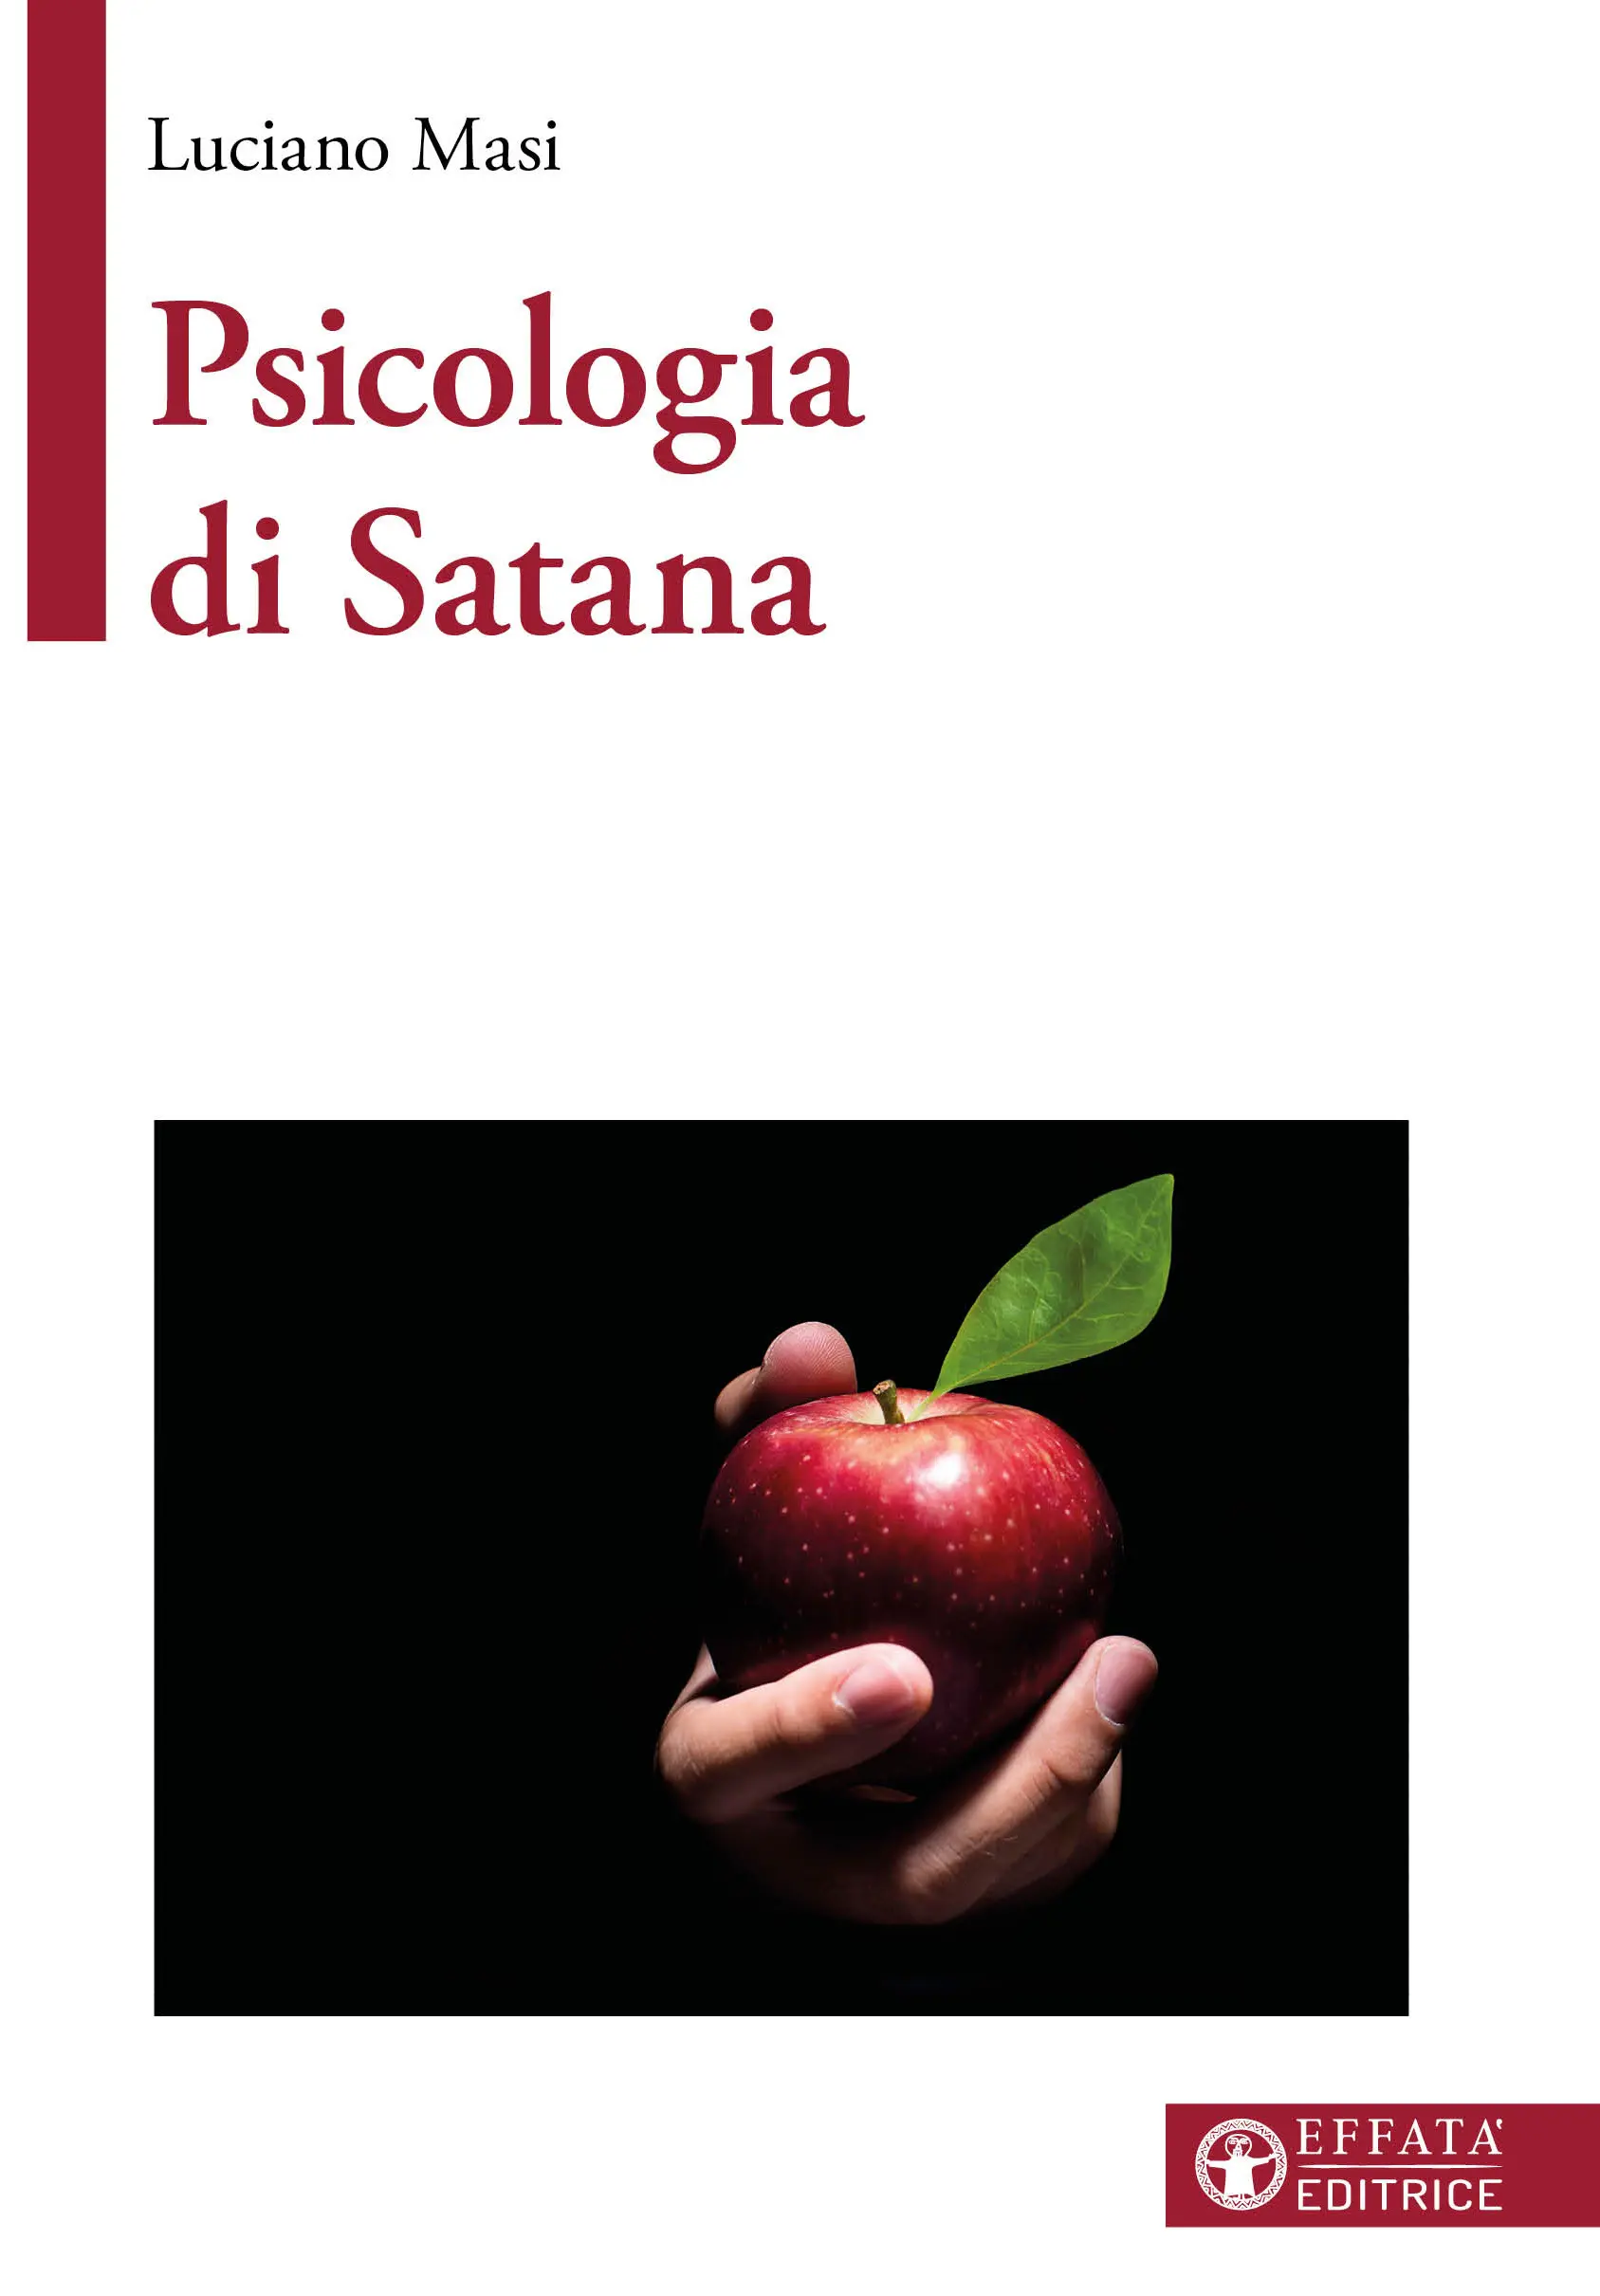 Libro «Psicologia di Satana» di Luciano Masi ~ Effatà Editrice